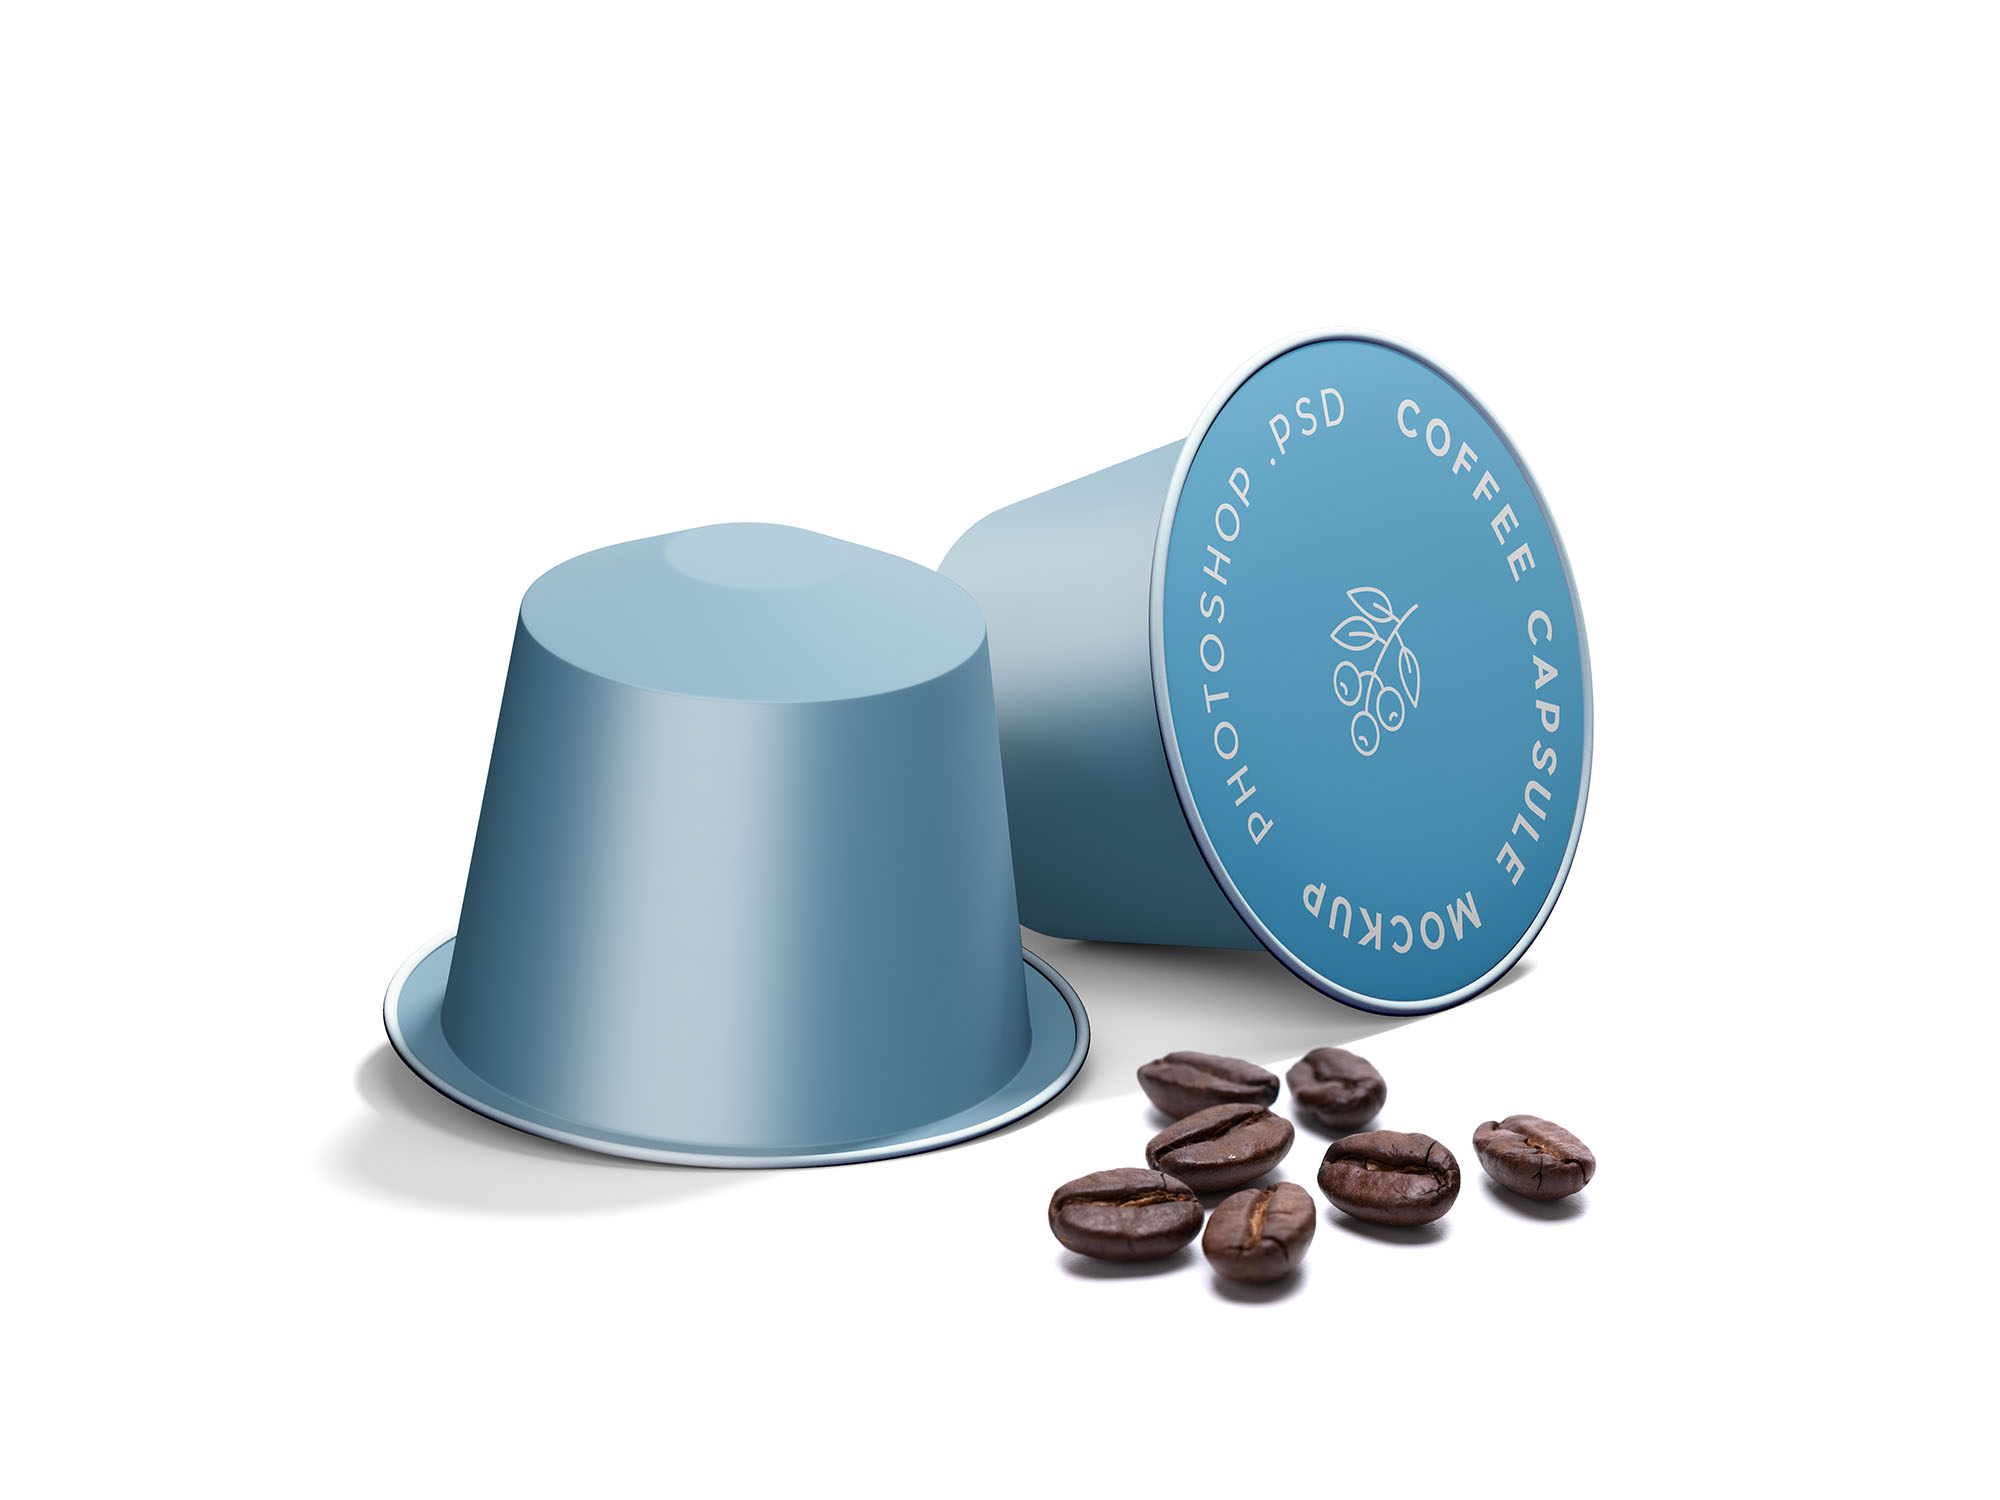 浓缩咖啡胶囊外观设计效果图样机 Espresso Coffe